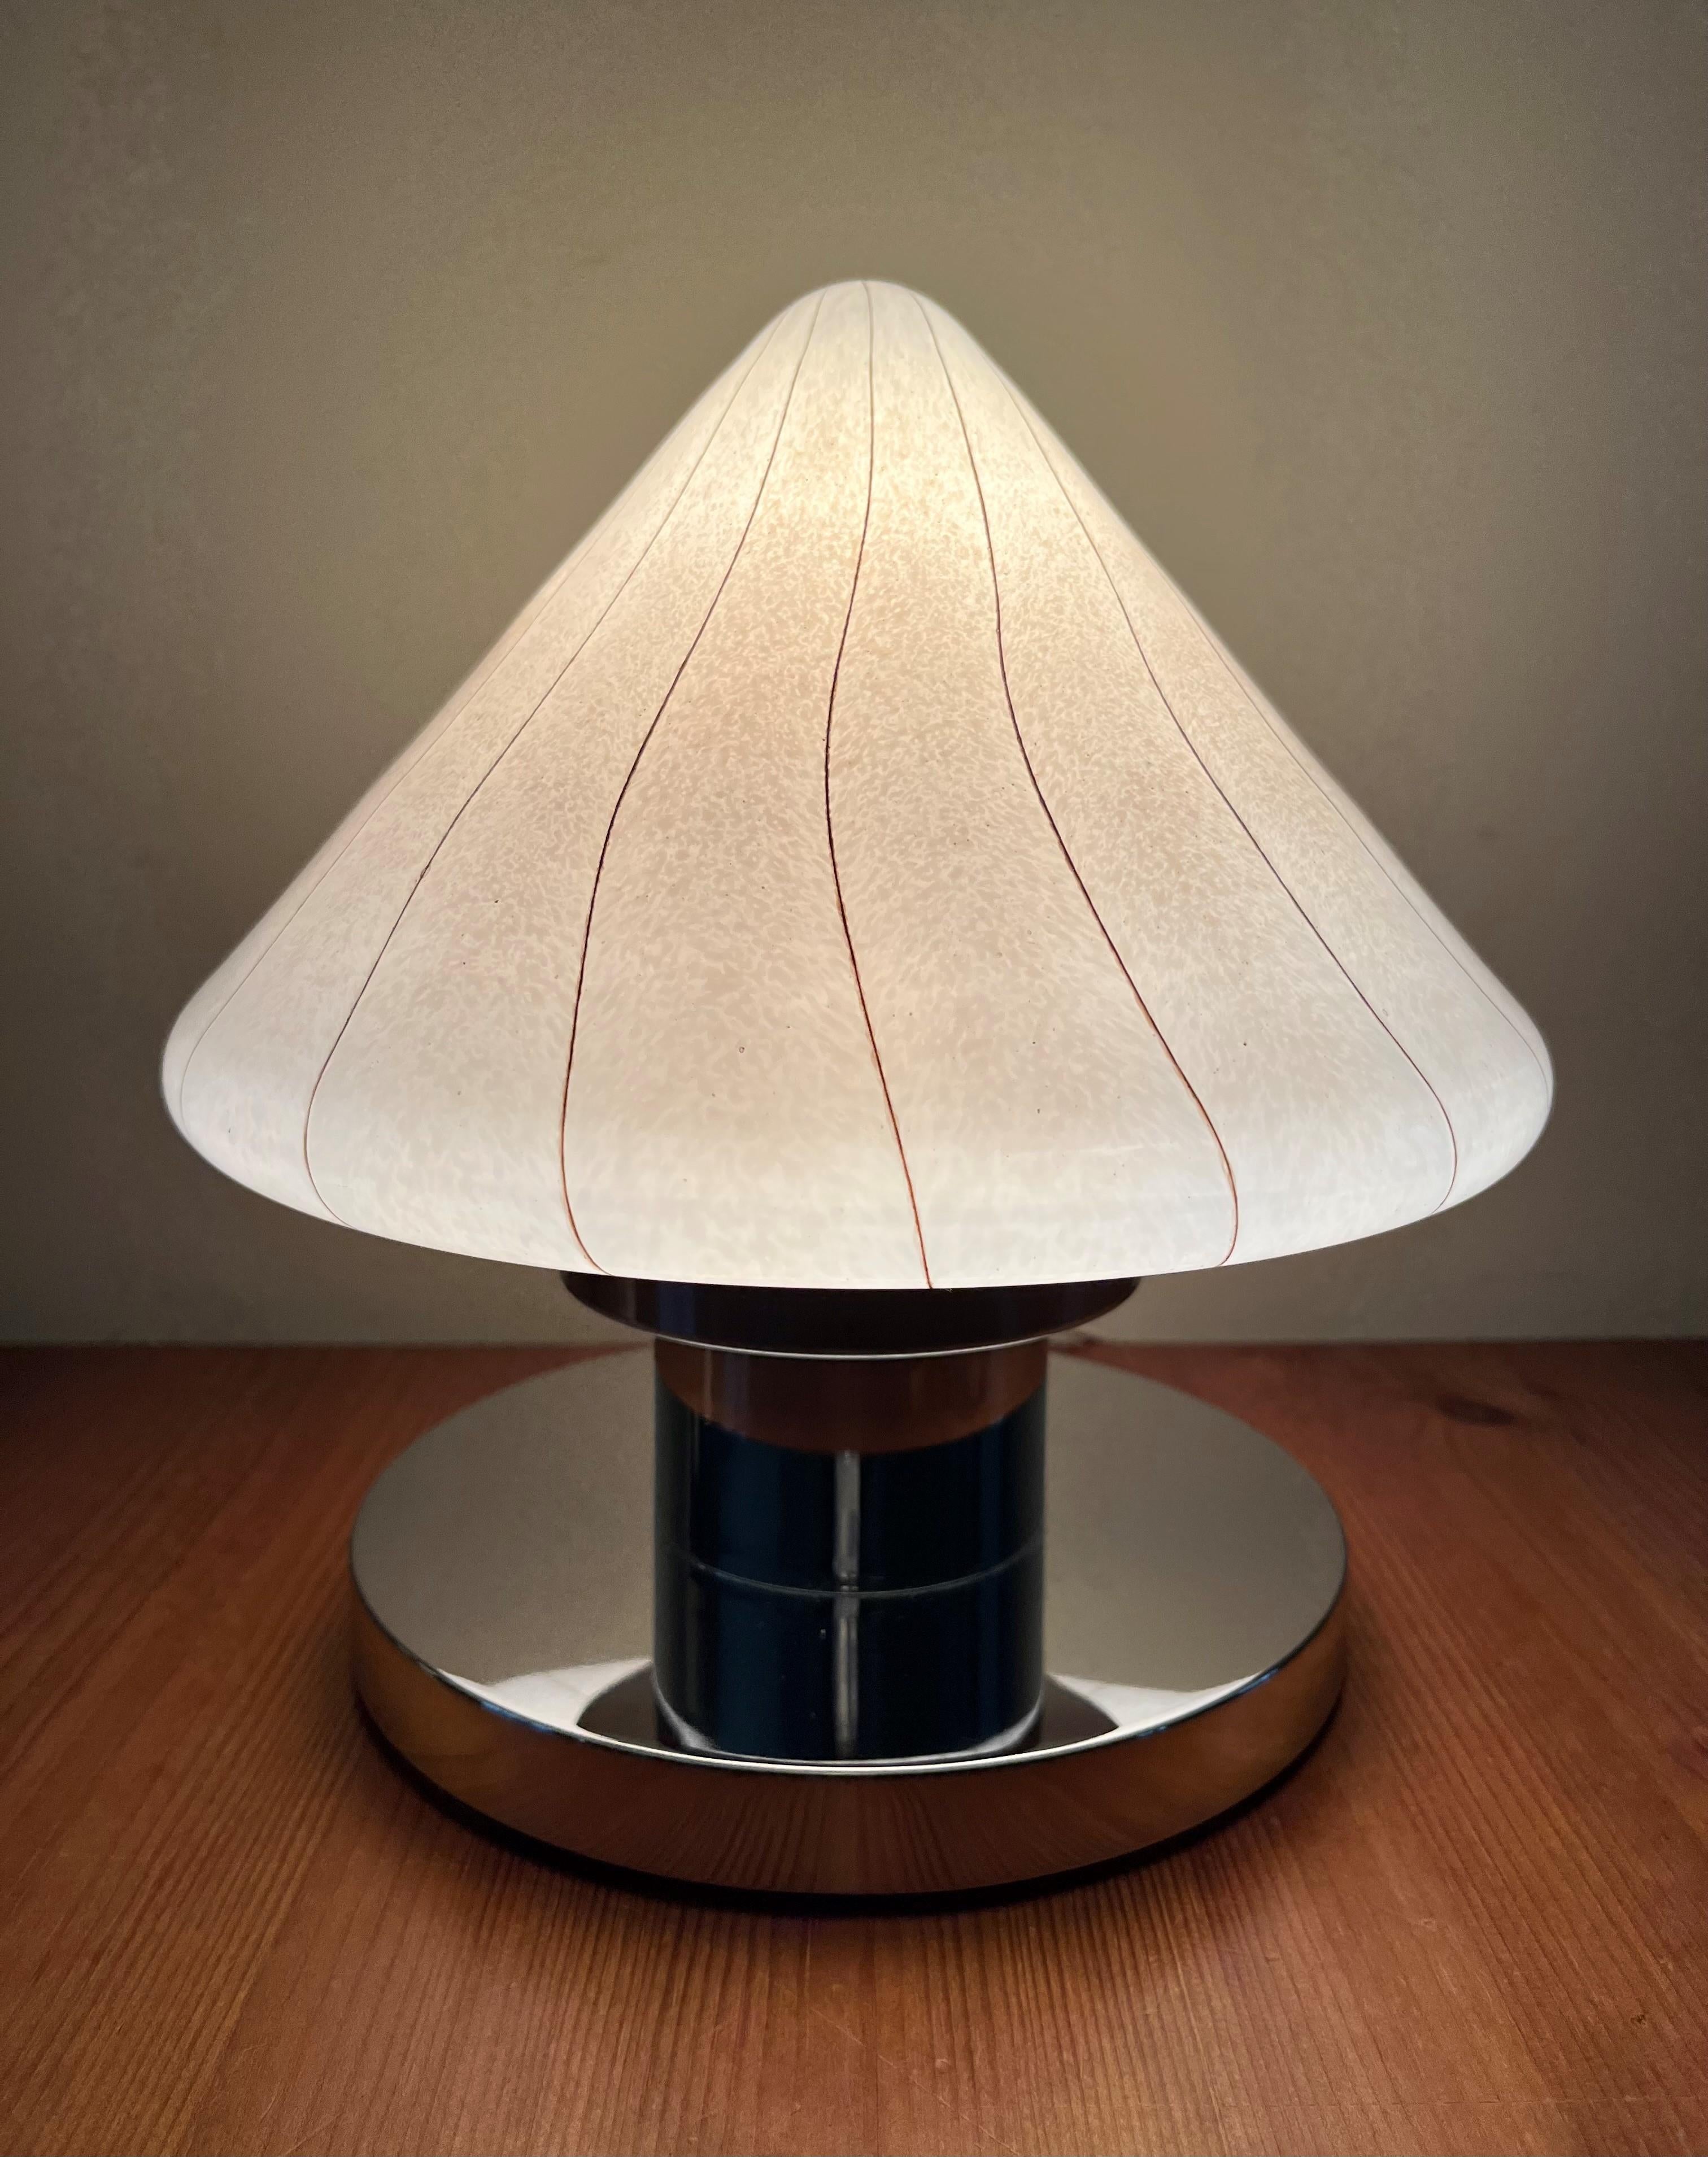 Charmant, raffiné et adorable ensemble de deux lampes de table italiennes Murano. Ces lampes de table ont été fabriquées dans les années 1970 en Italie. Le Label d'origine est encore présent sur la structure de la lampe de table.
Chaque lampe de